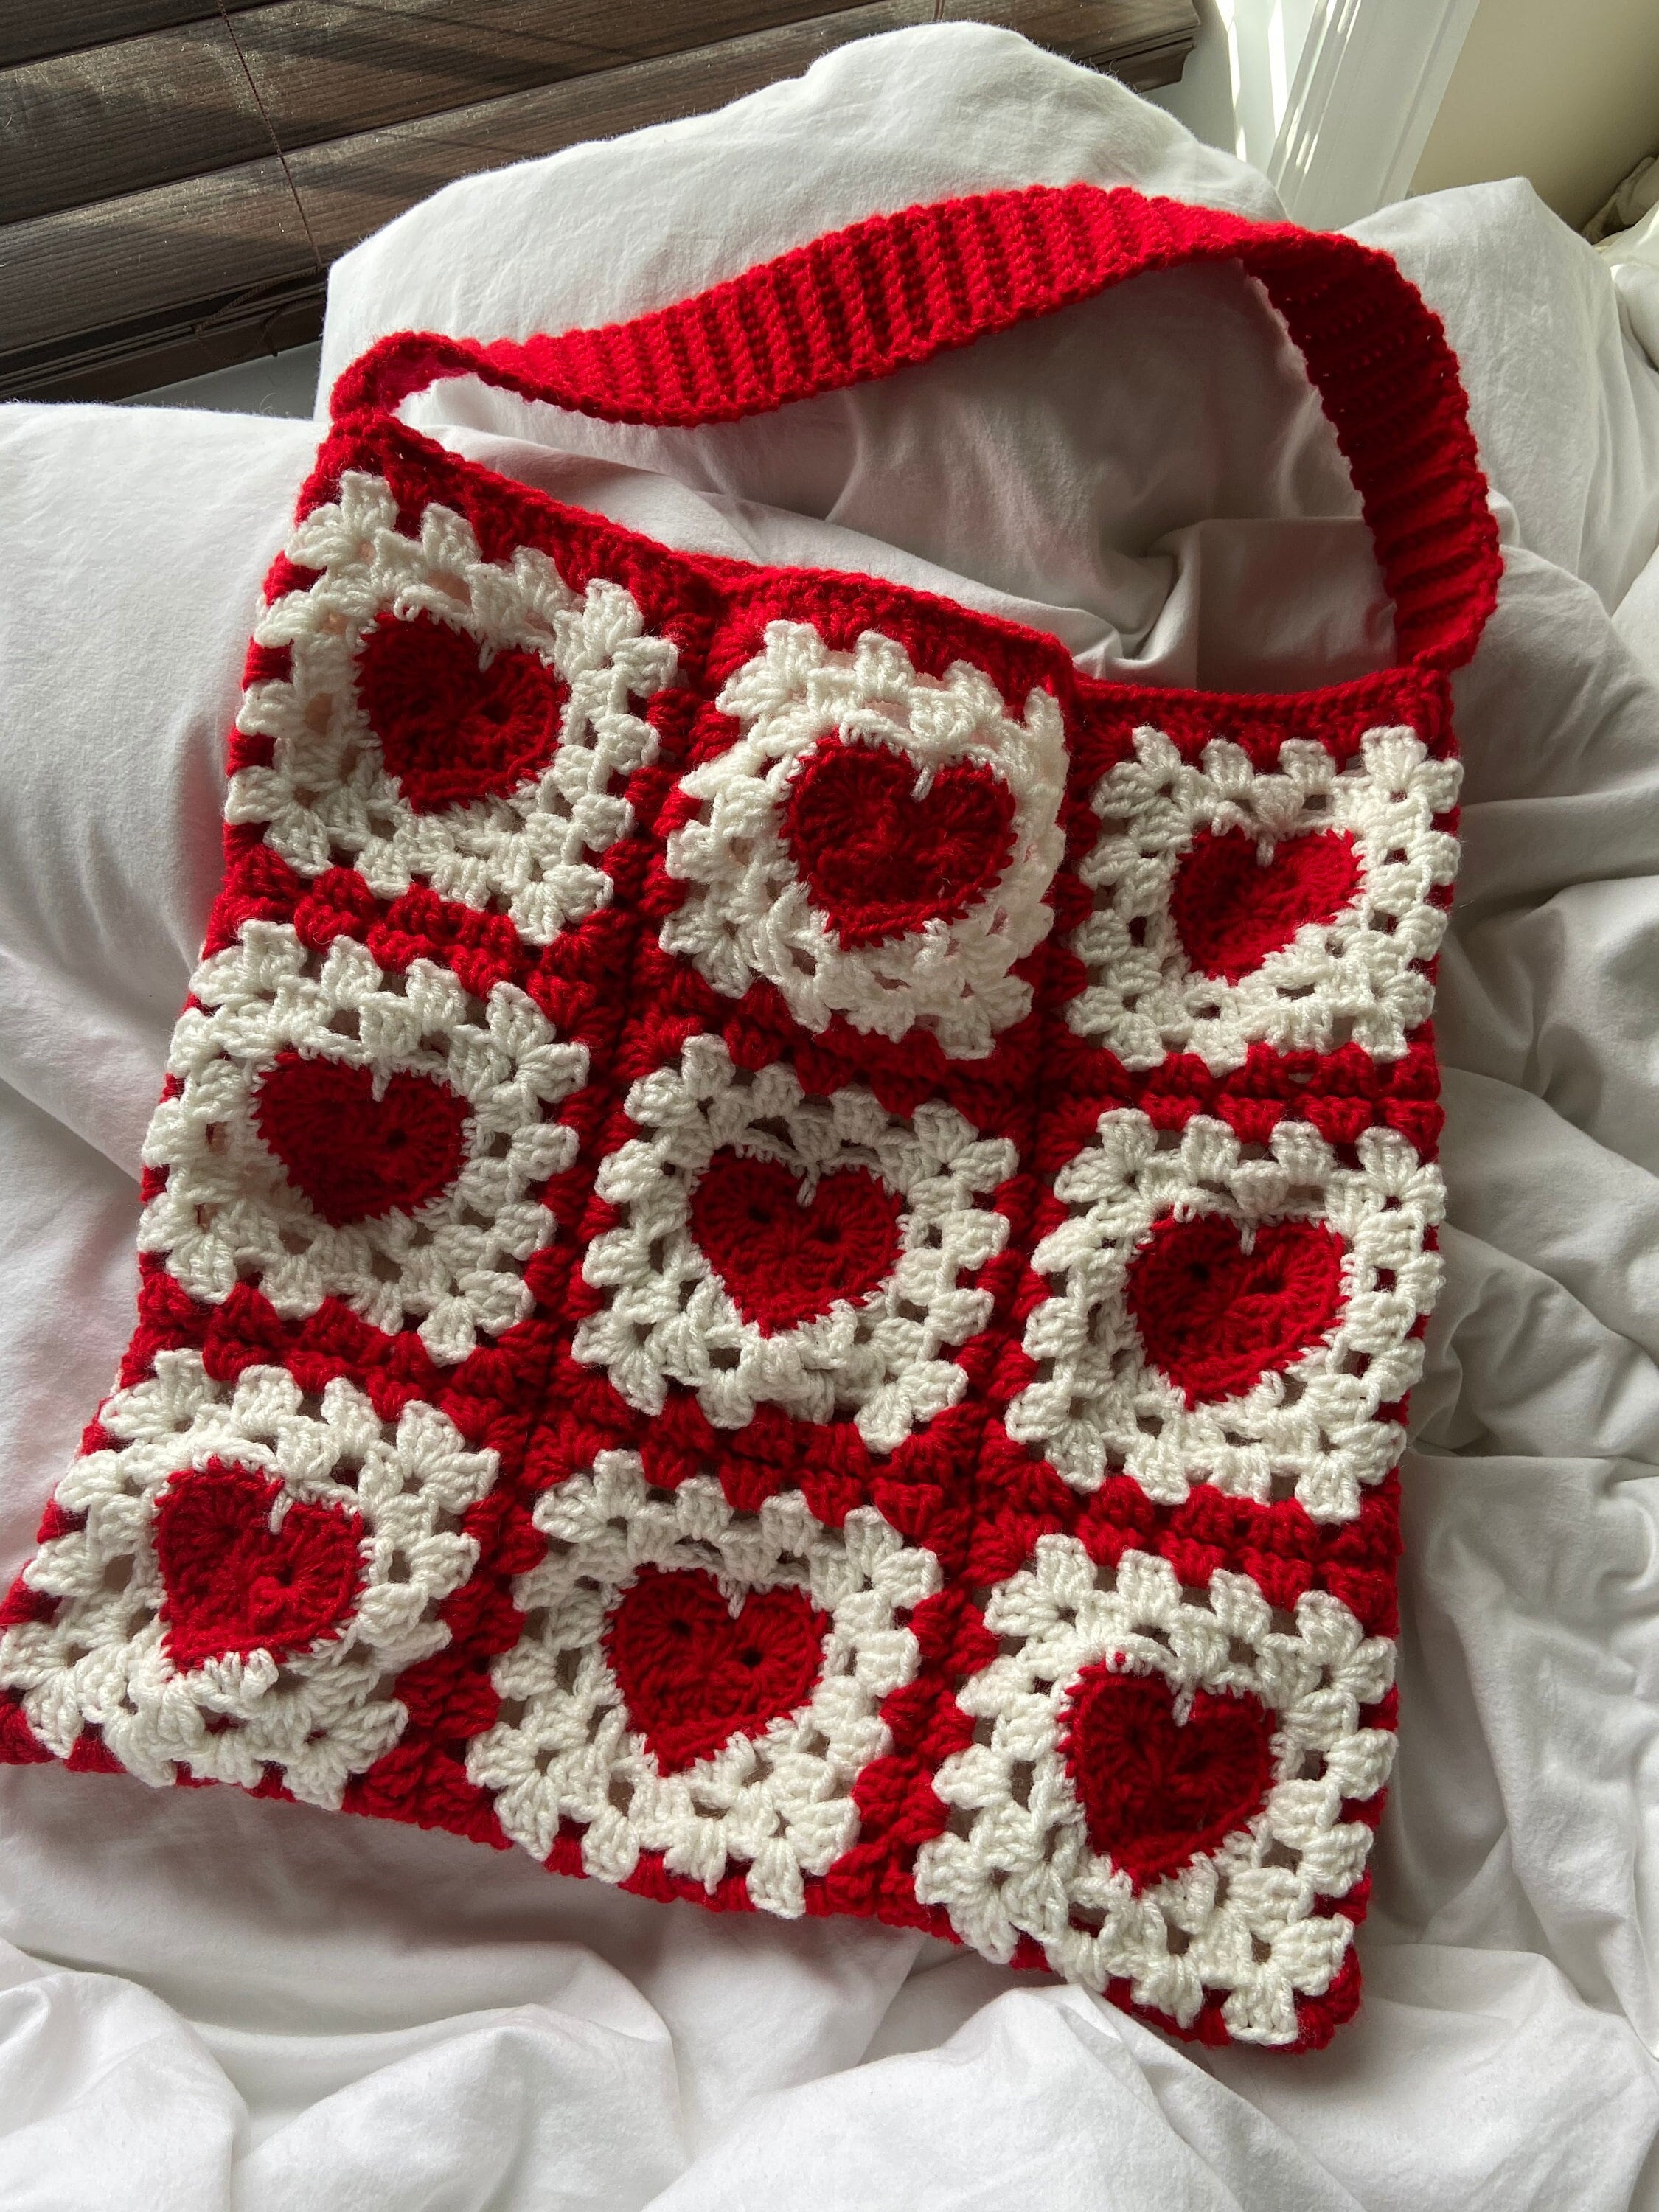 Crochet Heart Tote 